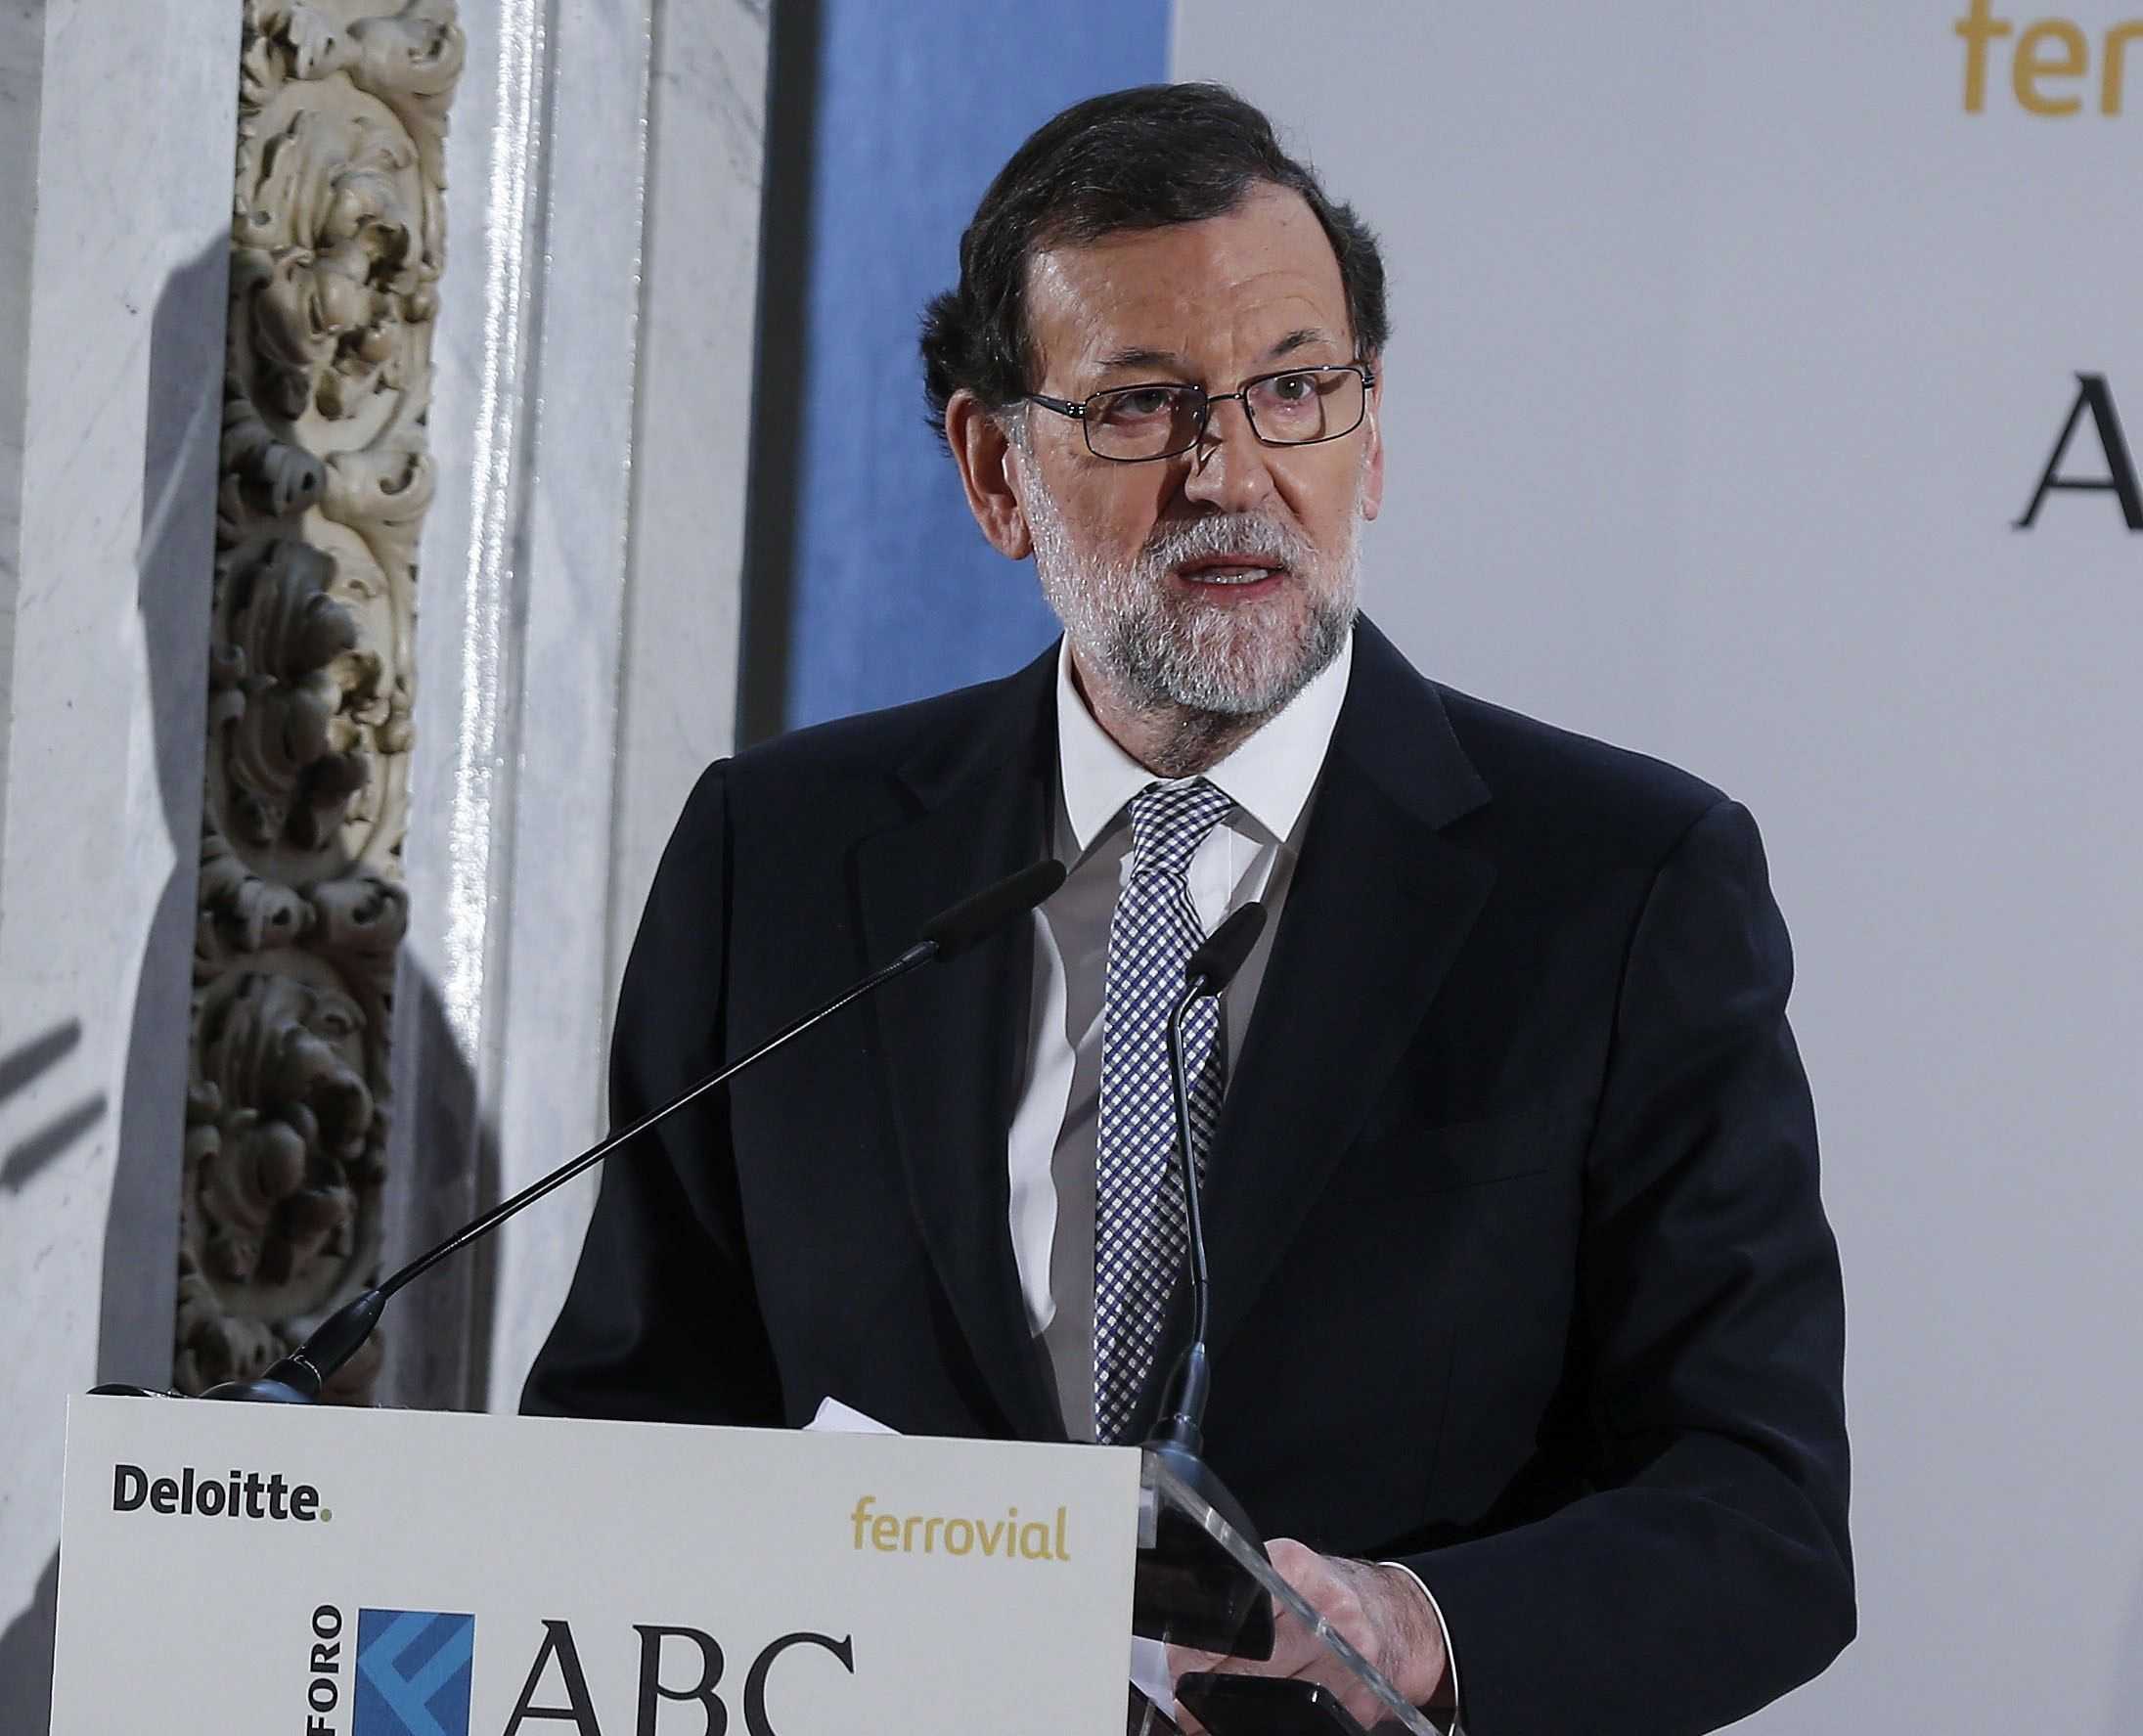 Rajoy cree que Puigdemont "merecía" el boicot de la UE